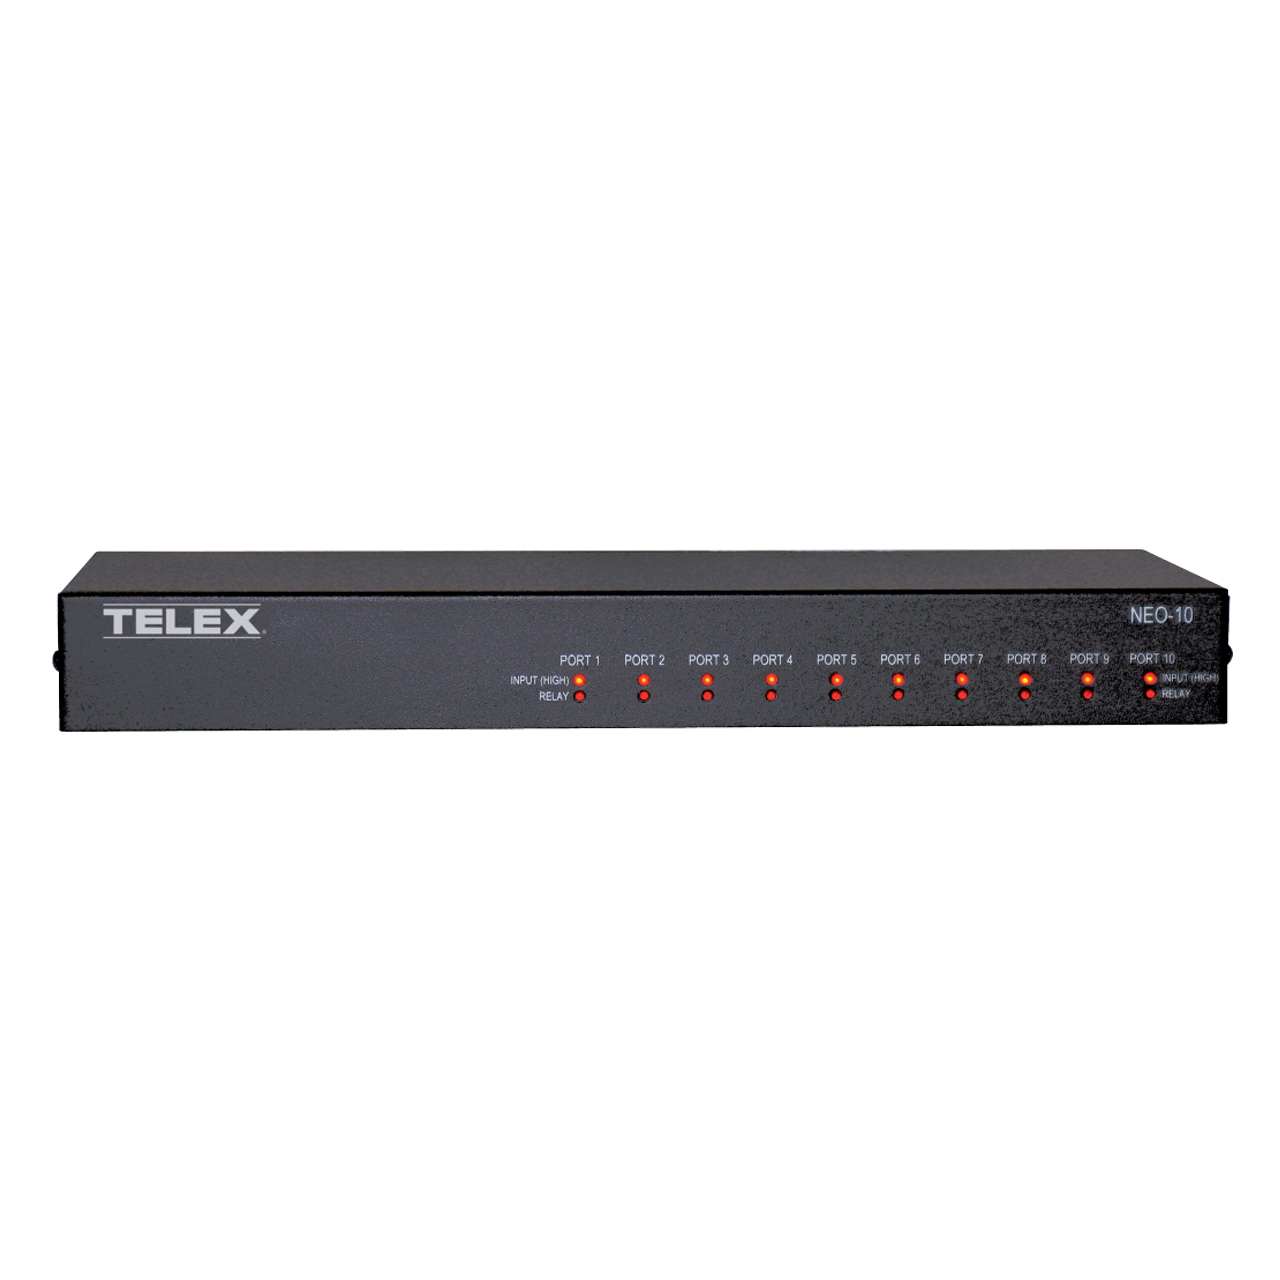 Telestar System Rome (Italy) I/O TELEX NEO-10